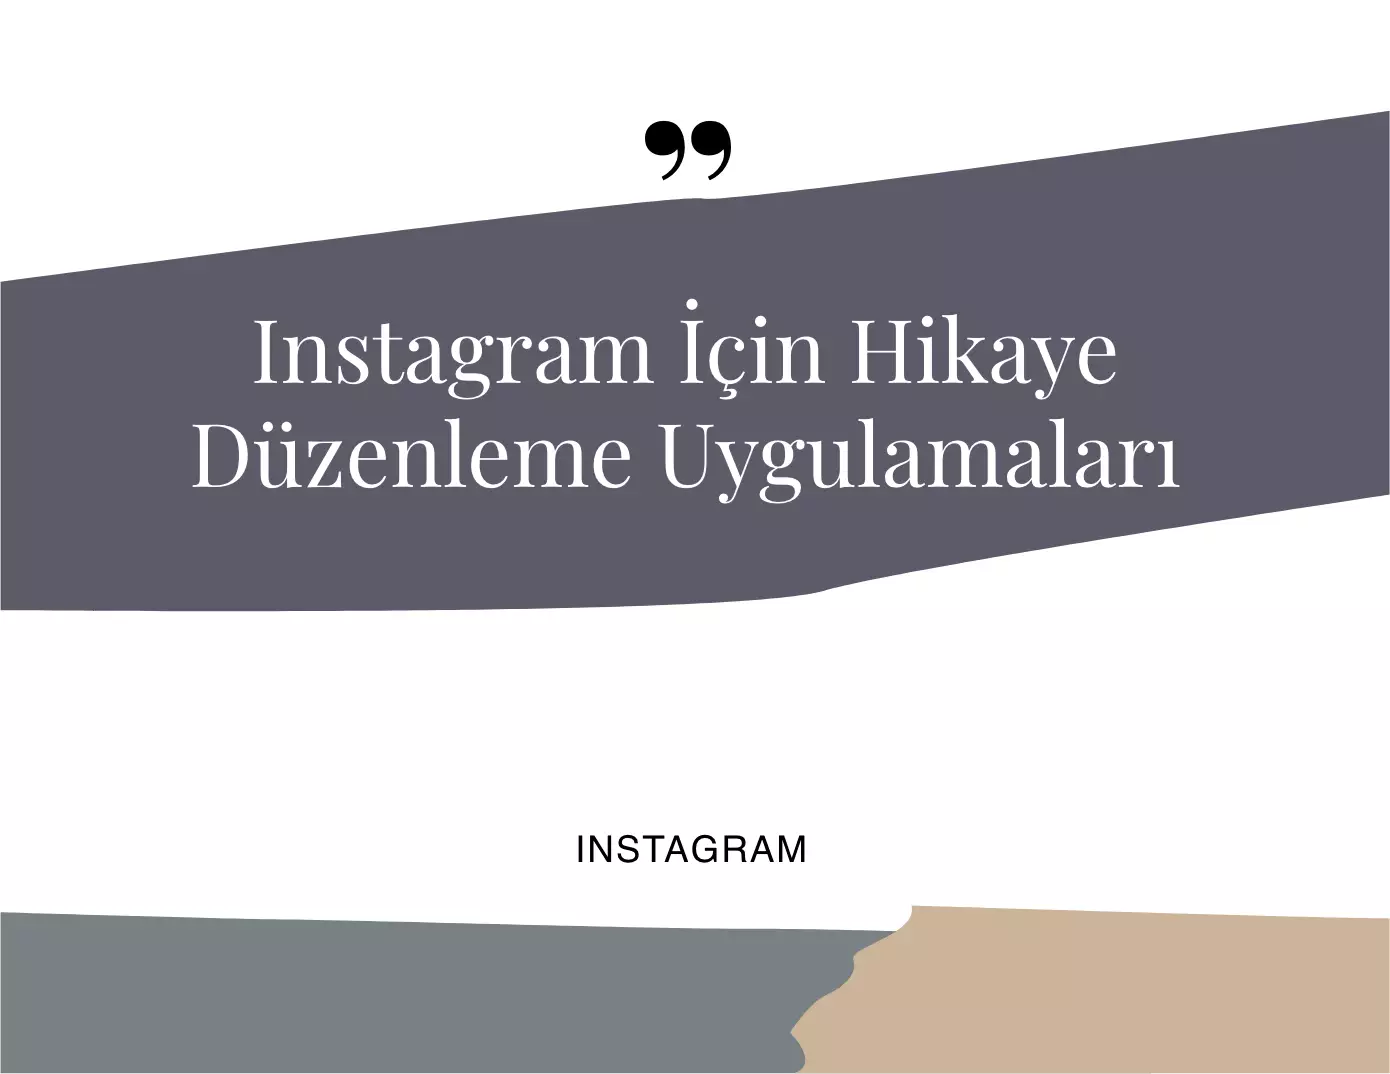 Instagram için Hikaye Düzenleme Uygulamaları